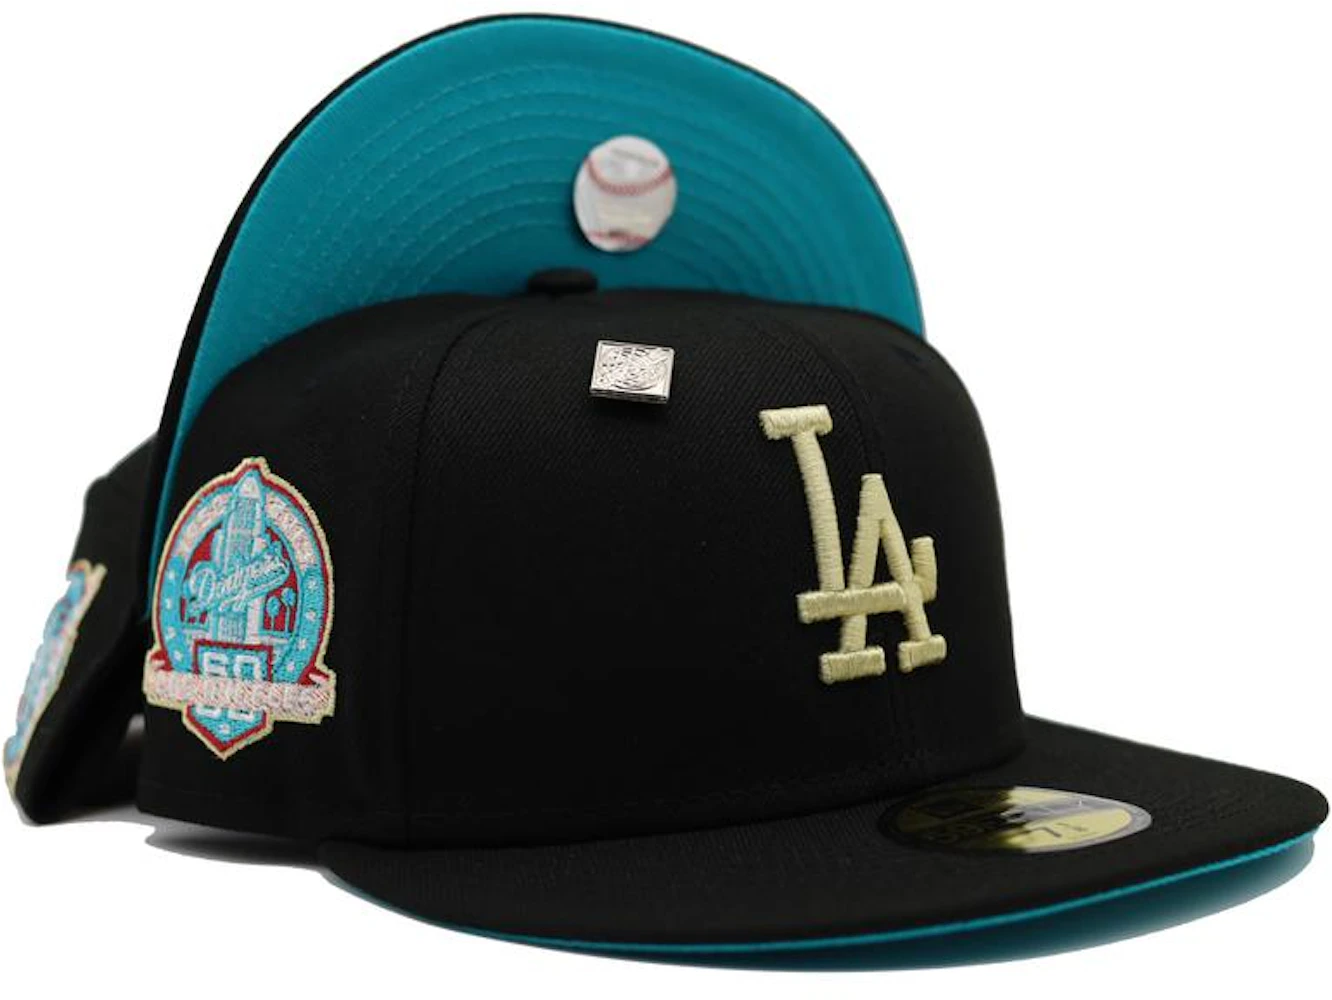 la dodgers hat for Sale in Las Vegas, NV - OfferUp